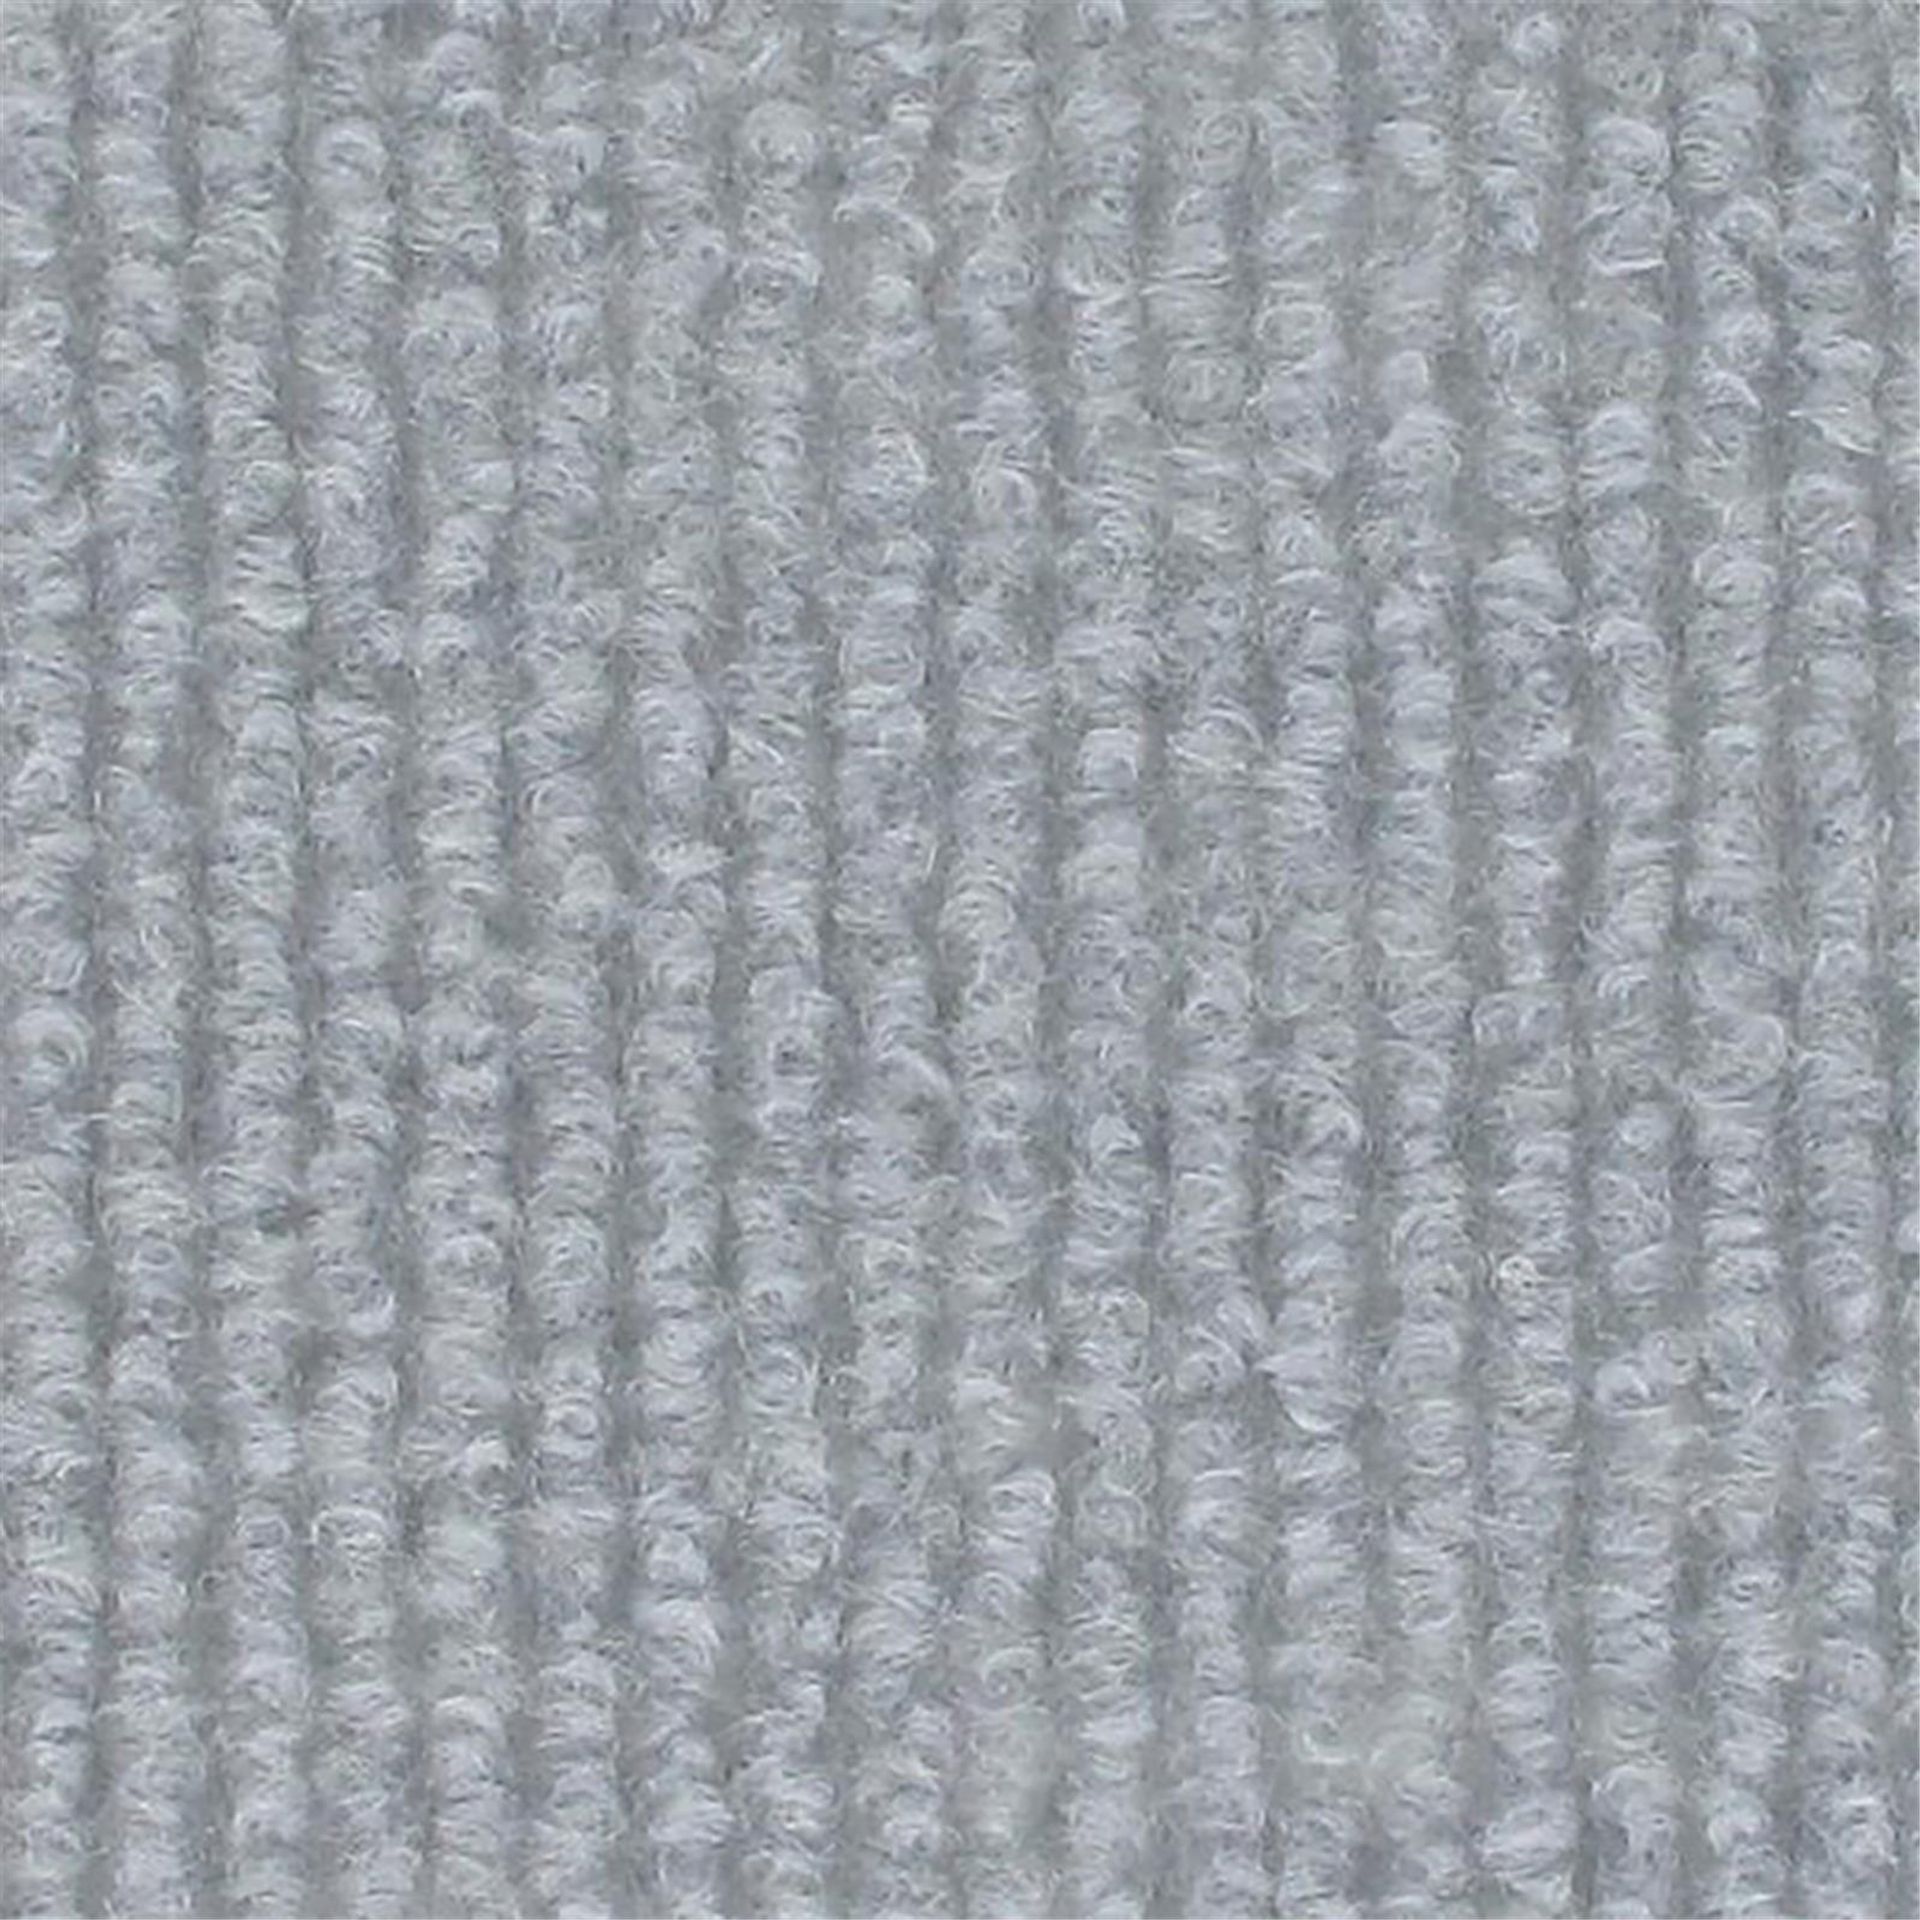 Messeboden Rips-Nadelvlies EXPOLINE Mousy Grey 0915 100qm ohne Schutzfolie - Rollenbreite 200 cm